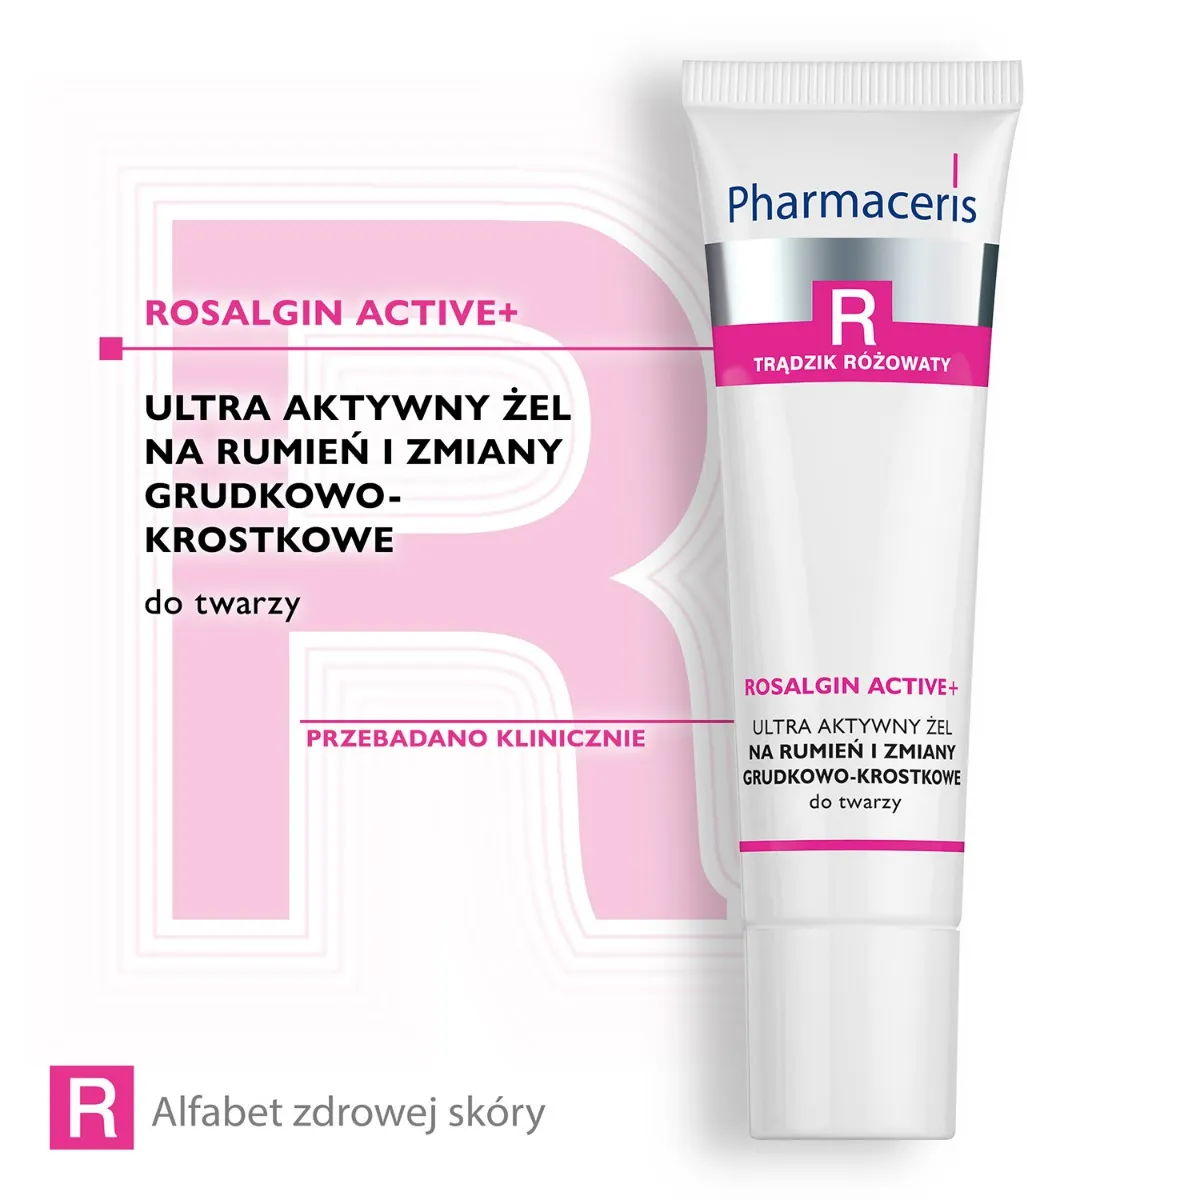 Pharmaceris R Rosalgin Active+ Ultra aktywny żel na rumień i zmiany grudkowo-krostkowe do twarzy, 30 ml 